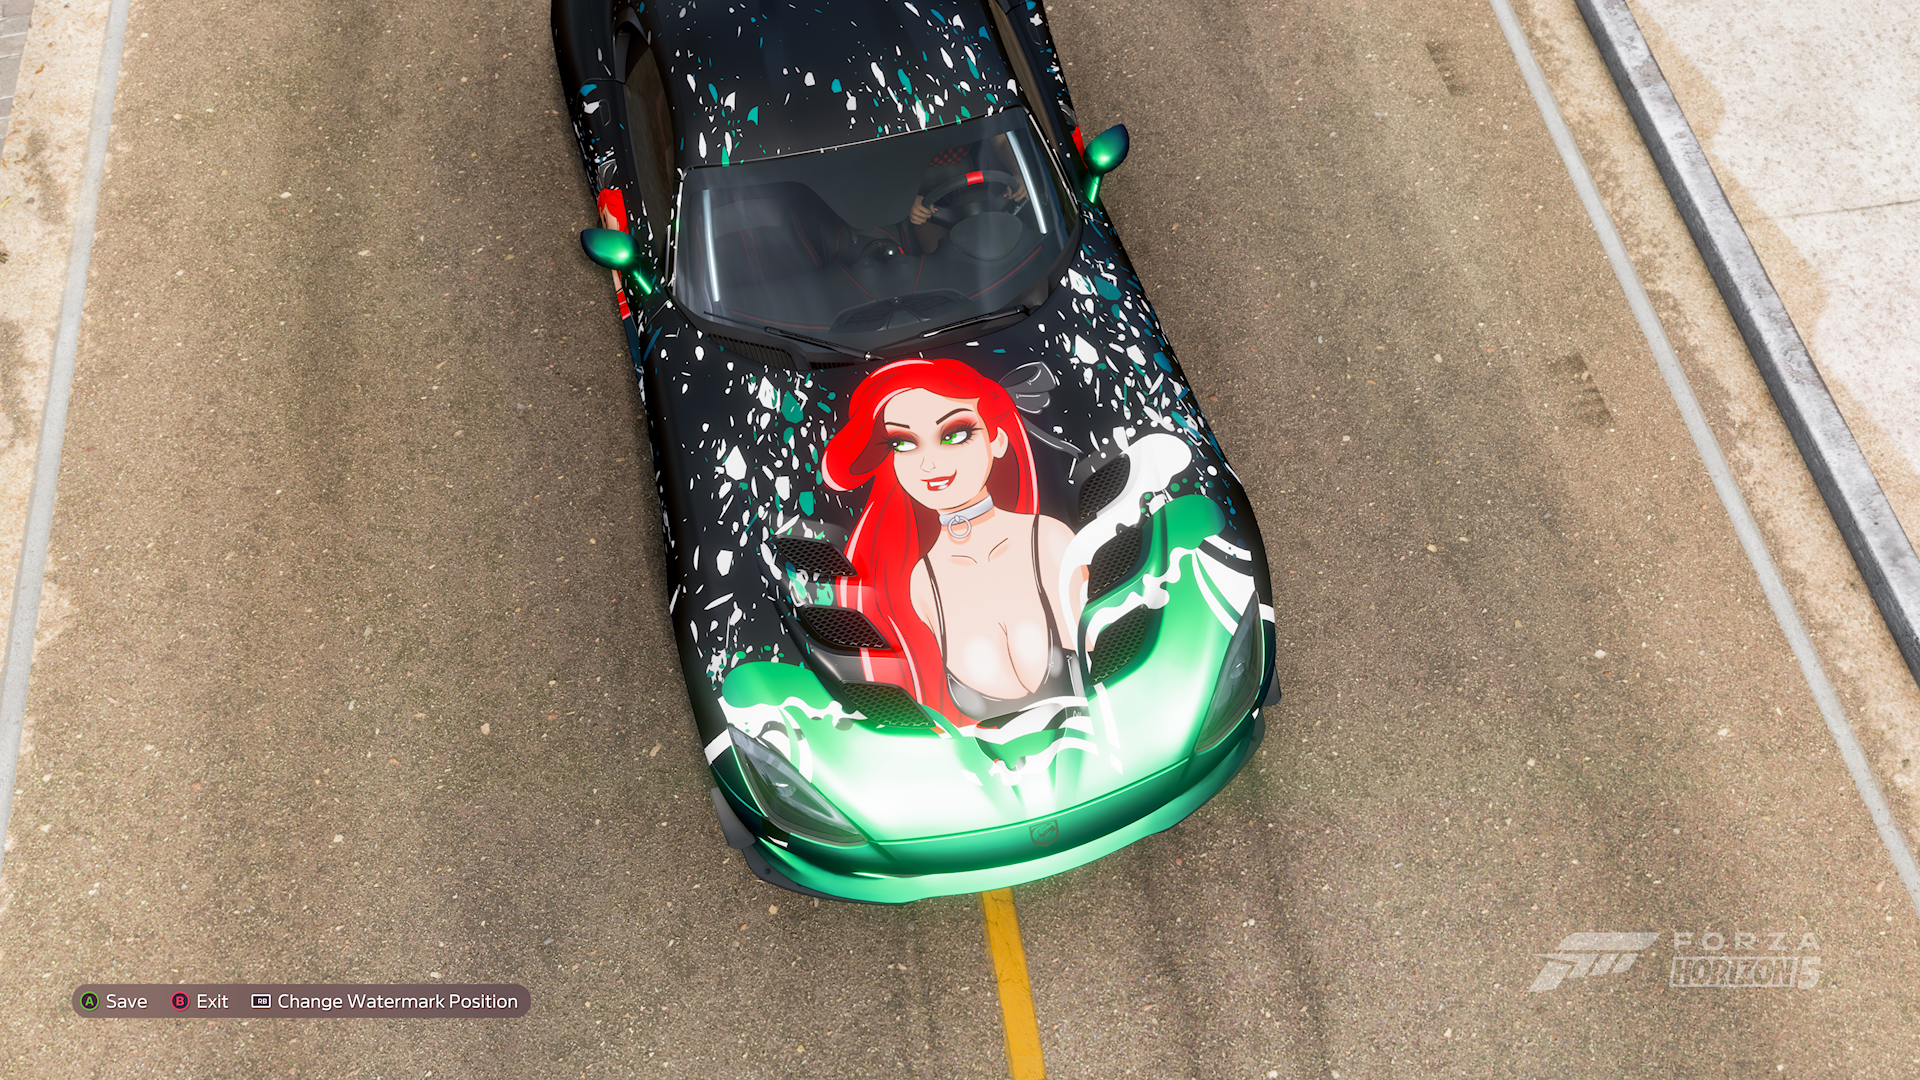 Spieler in Forza Horizon 5 wurden bis 9999 für Aufkleber mit halbnackten Mädchen auf Autos gesperrt